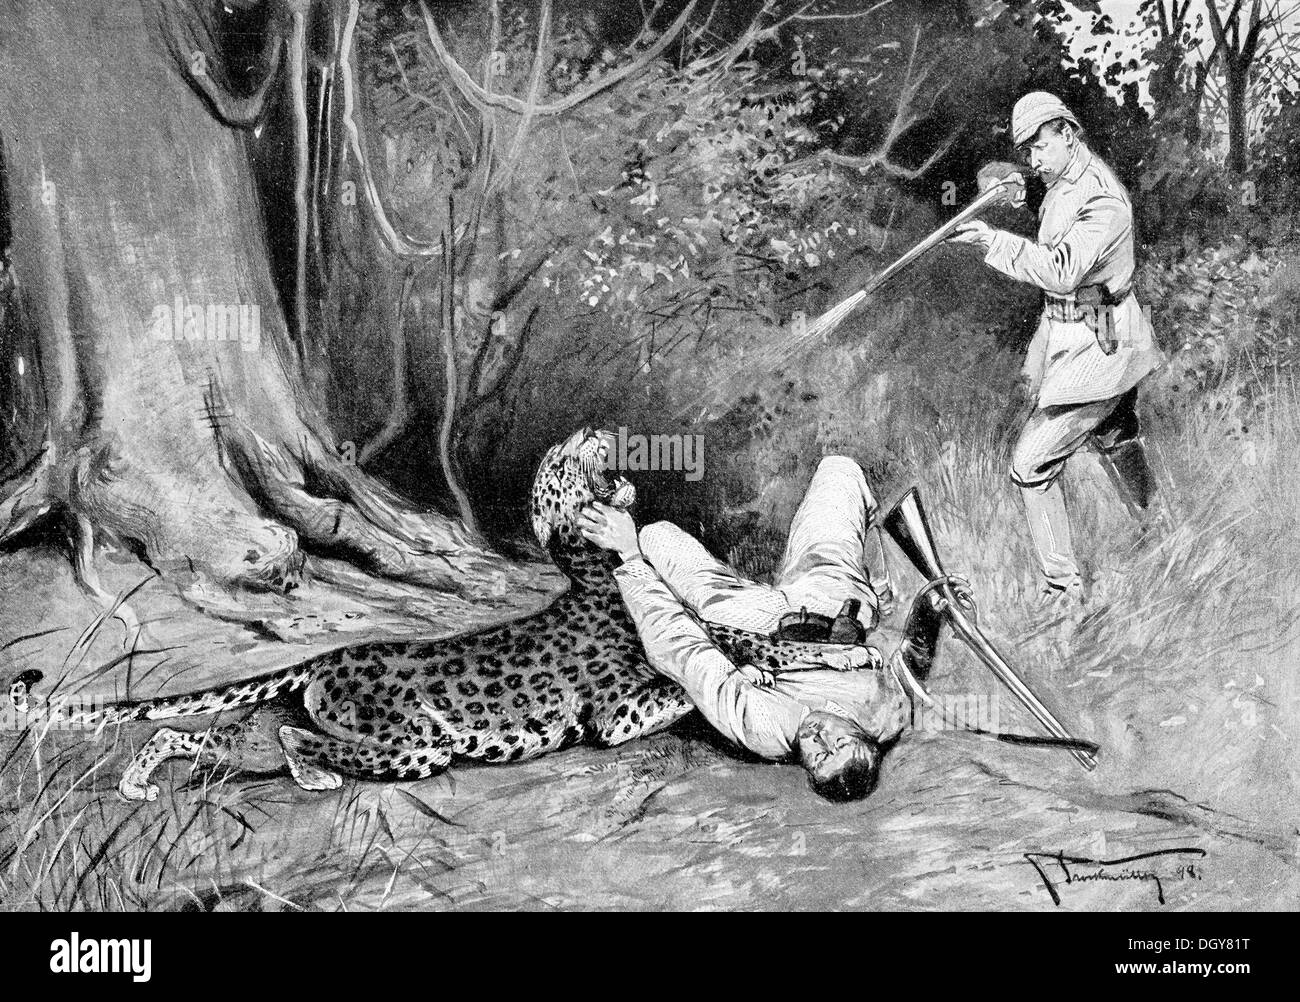 Leopard caccia in tedesco Africa sudoccidentale, illustrazione da annuario di arte moderna in Master xilografie, 1900, Namibia Foto Stock